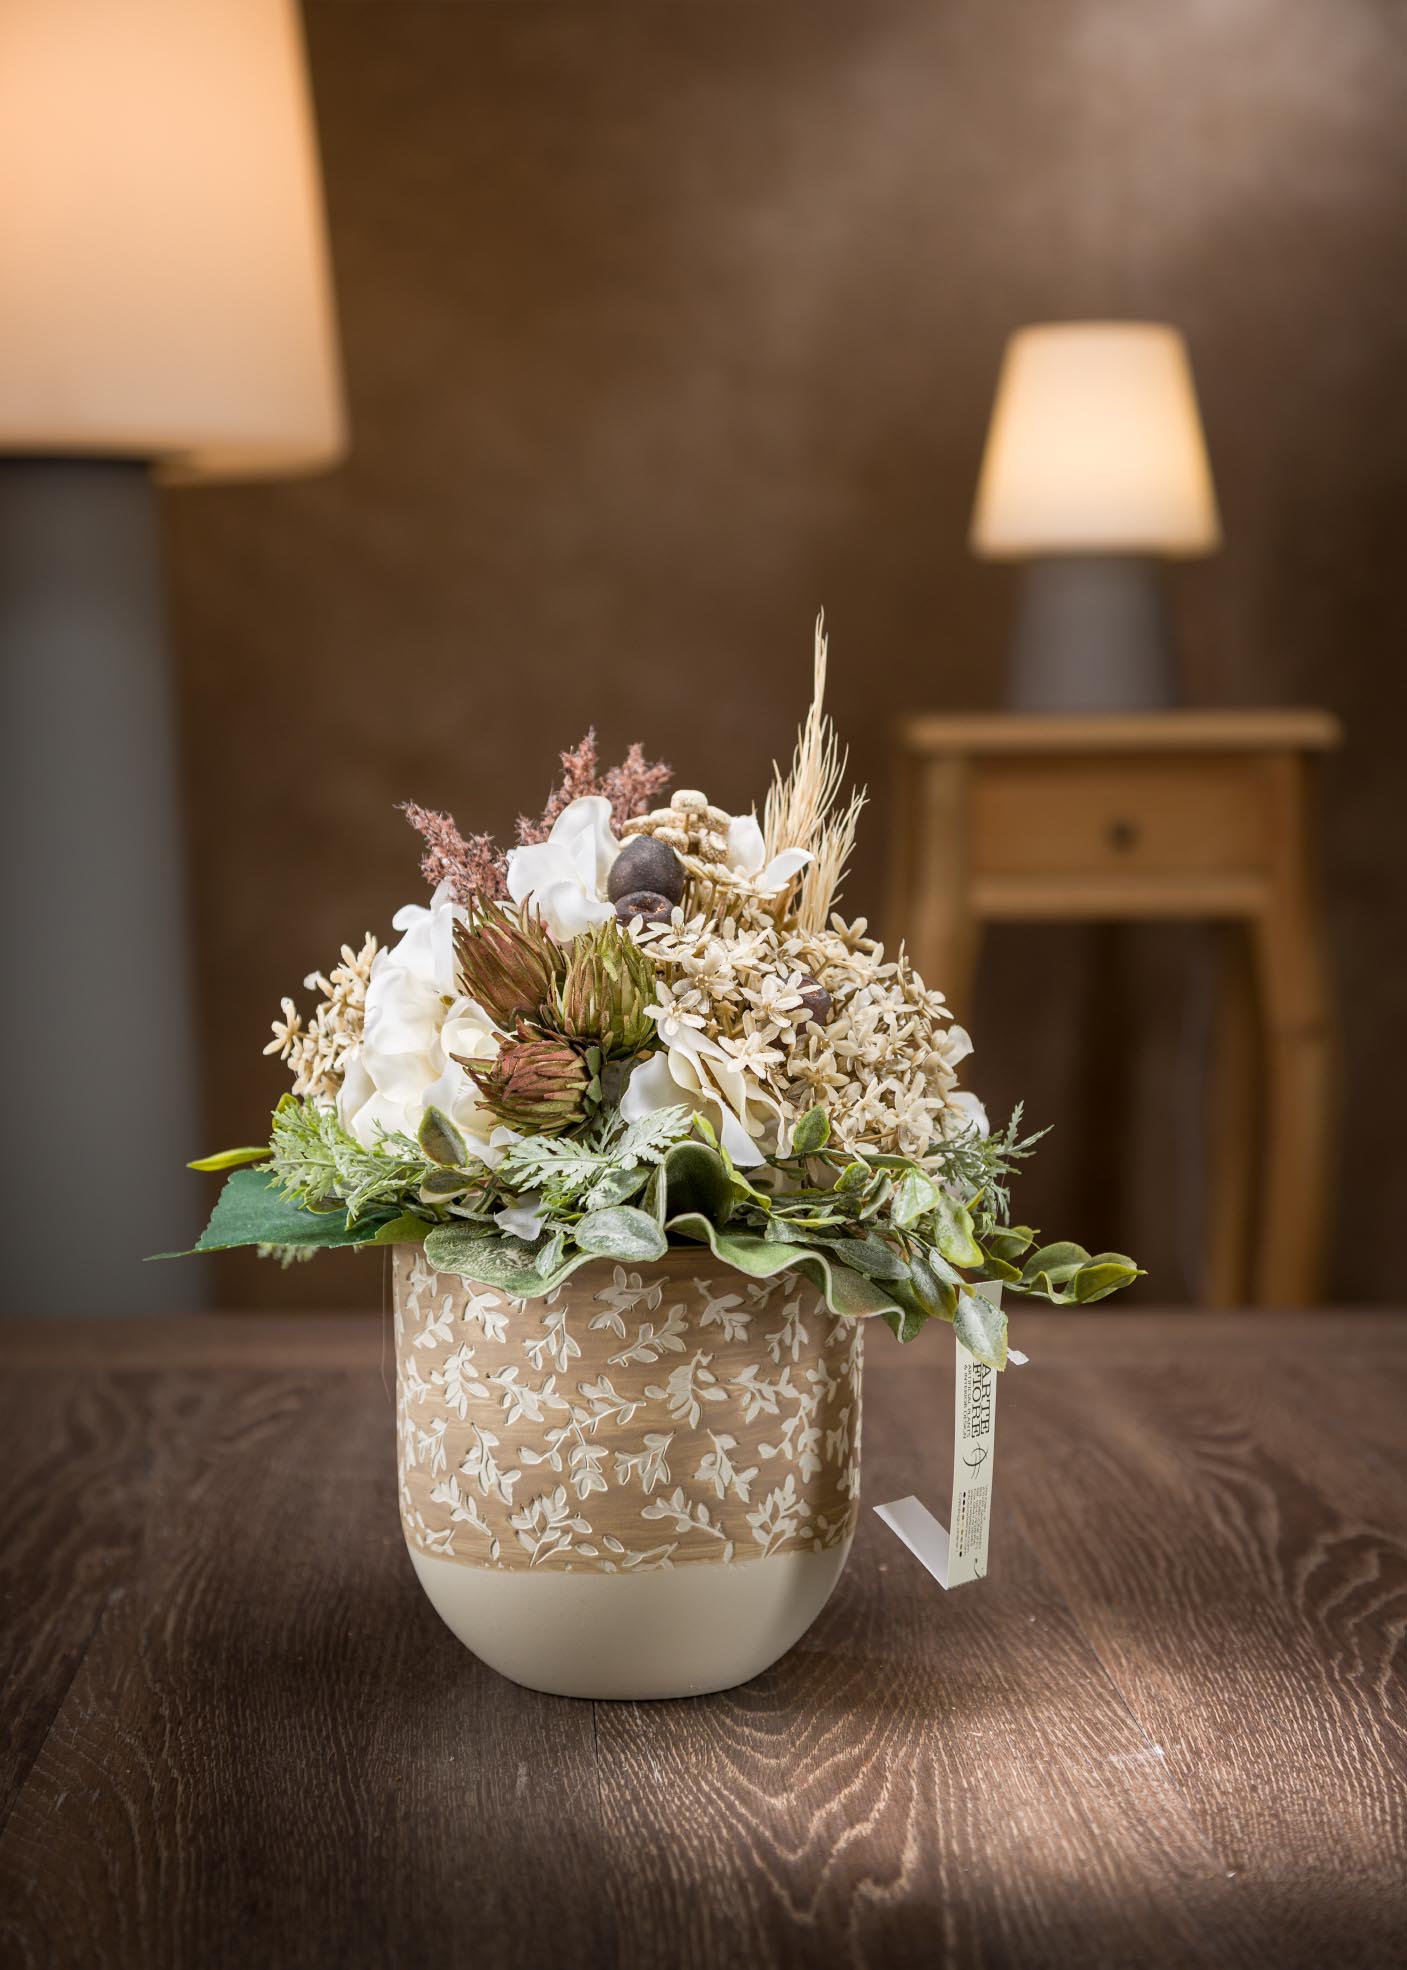 Composizione fiori per compleanno media in vaso ceramica panna e marrone